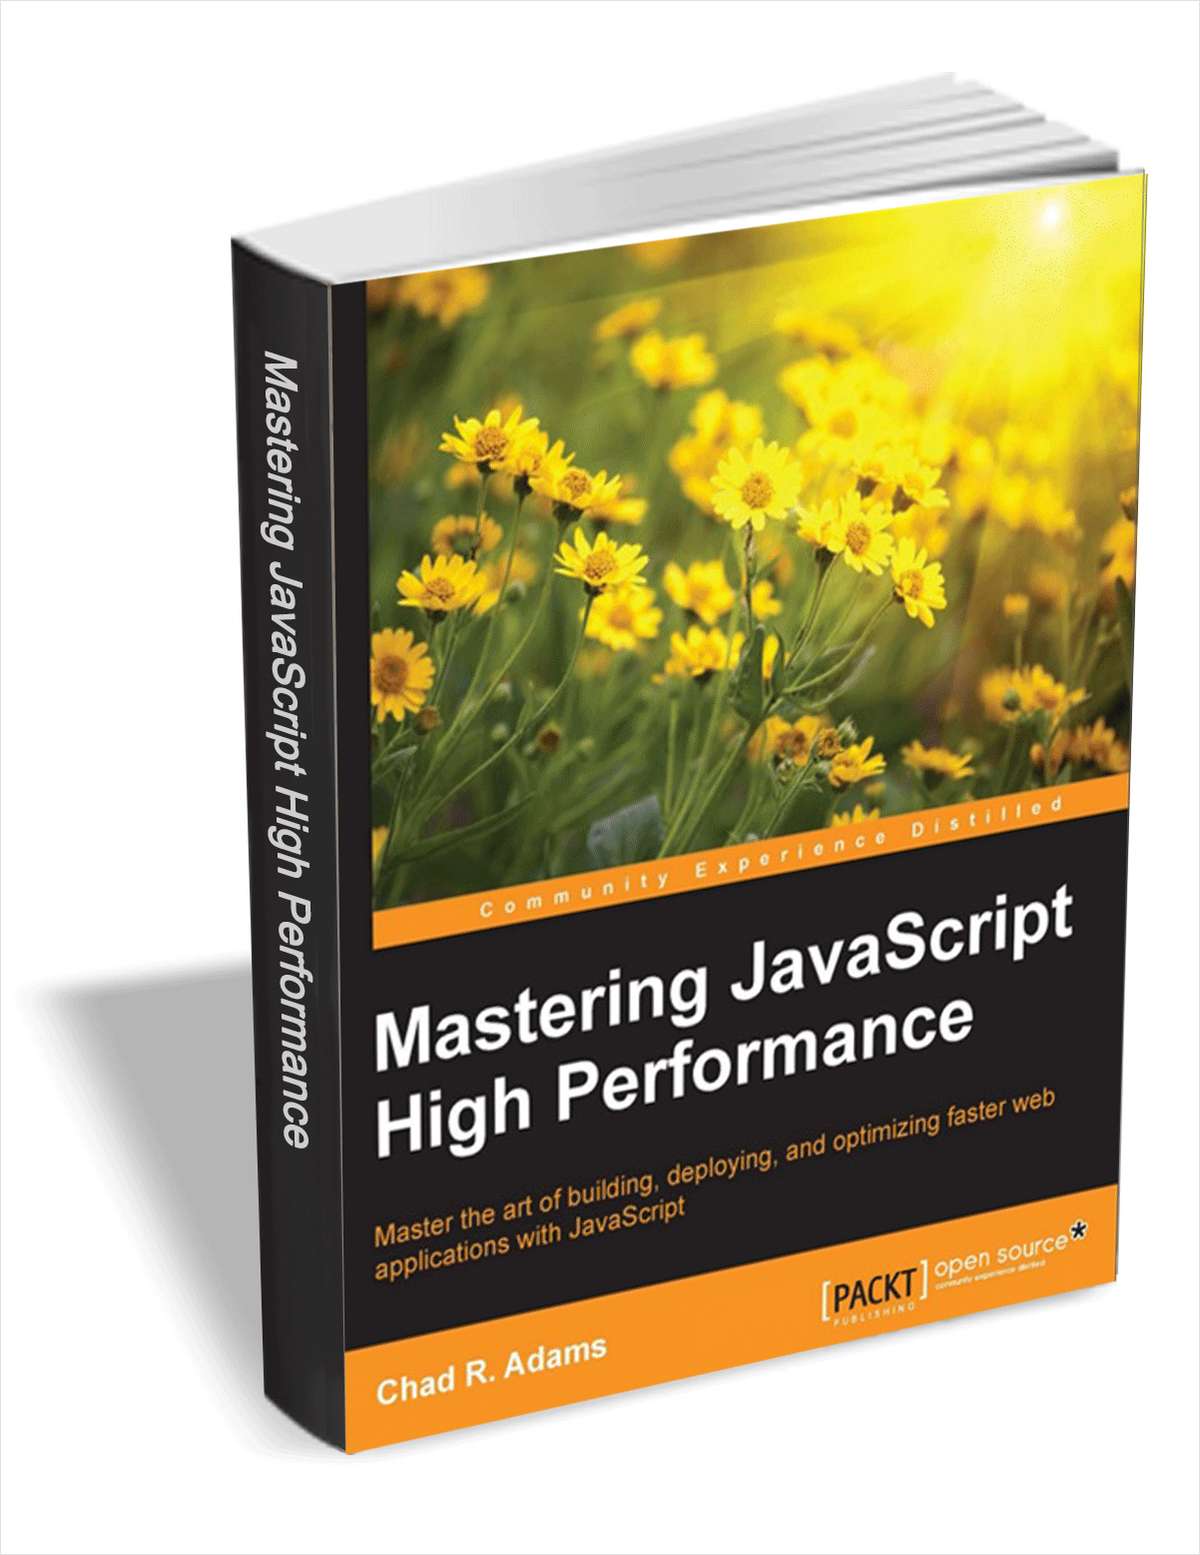 Mastering JavaScript High Performance